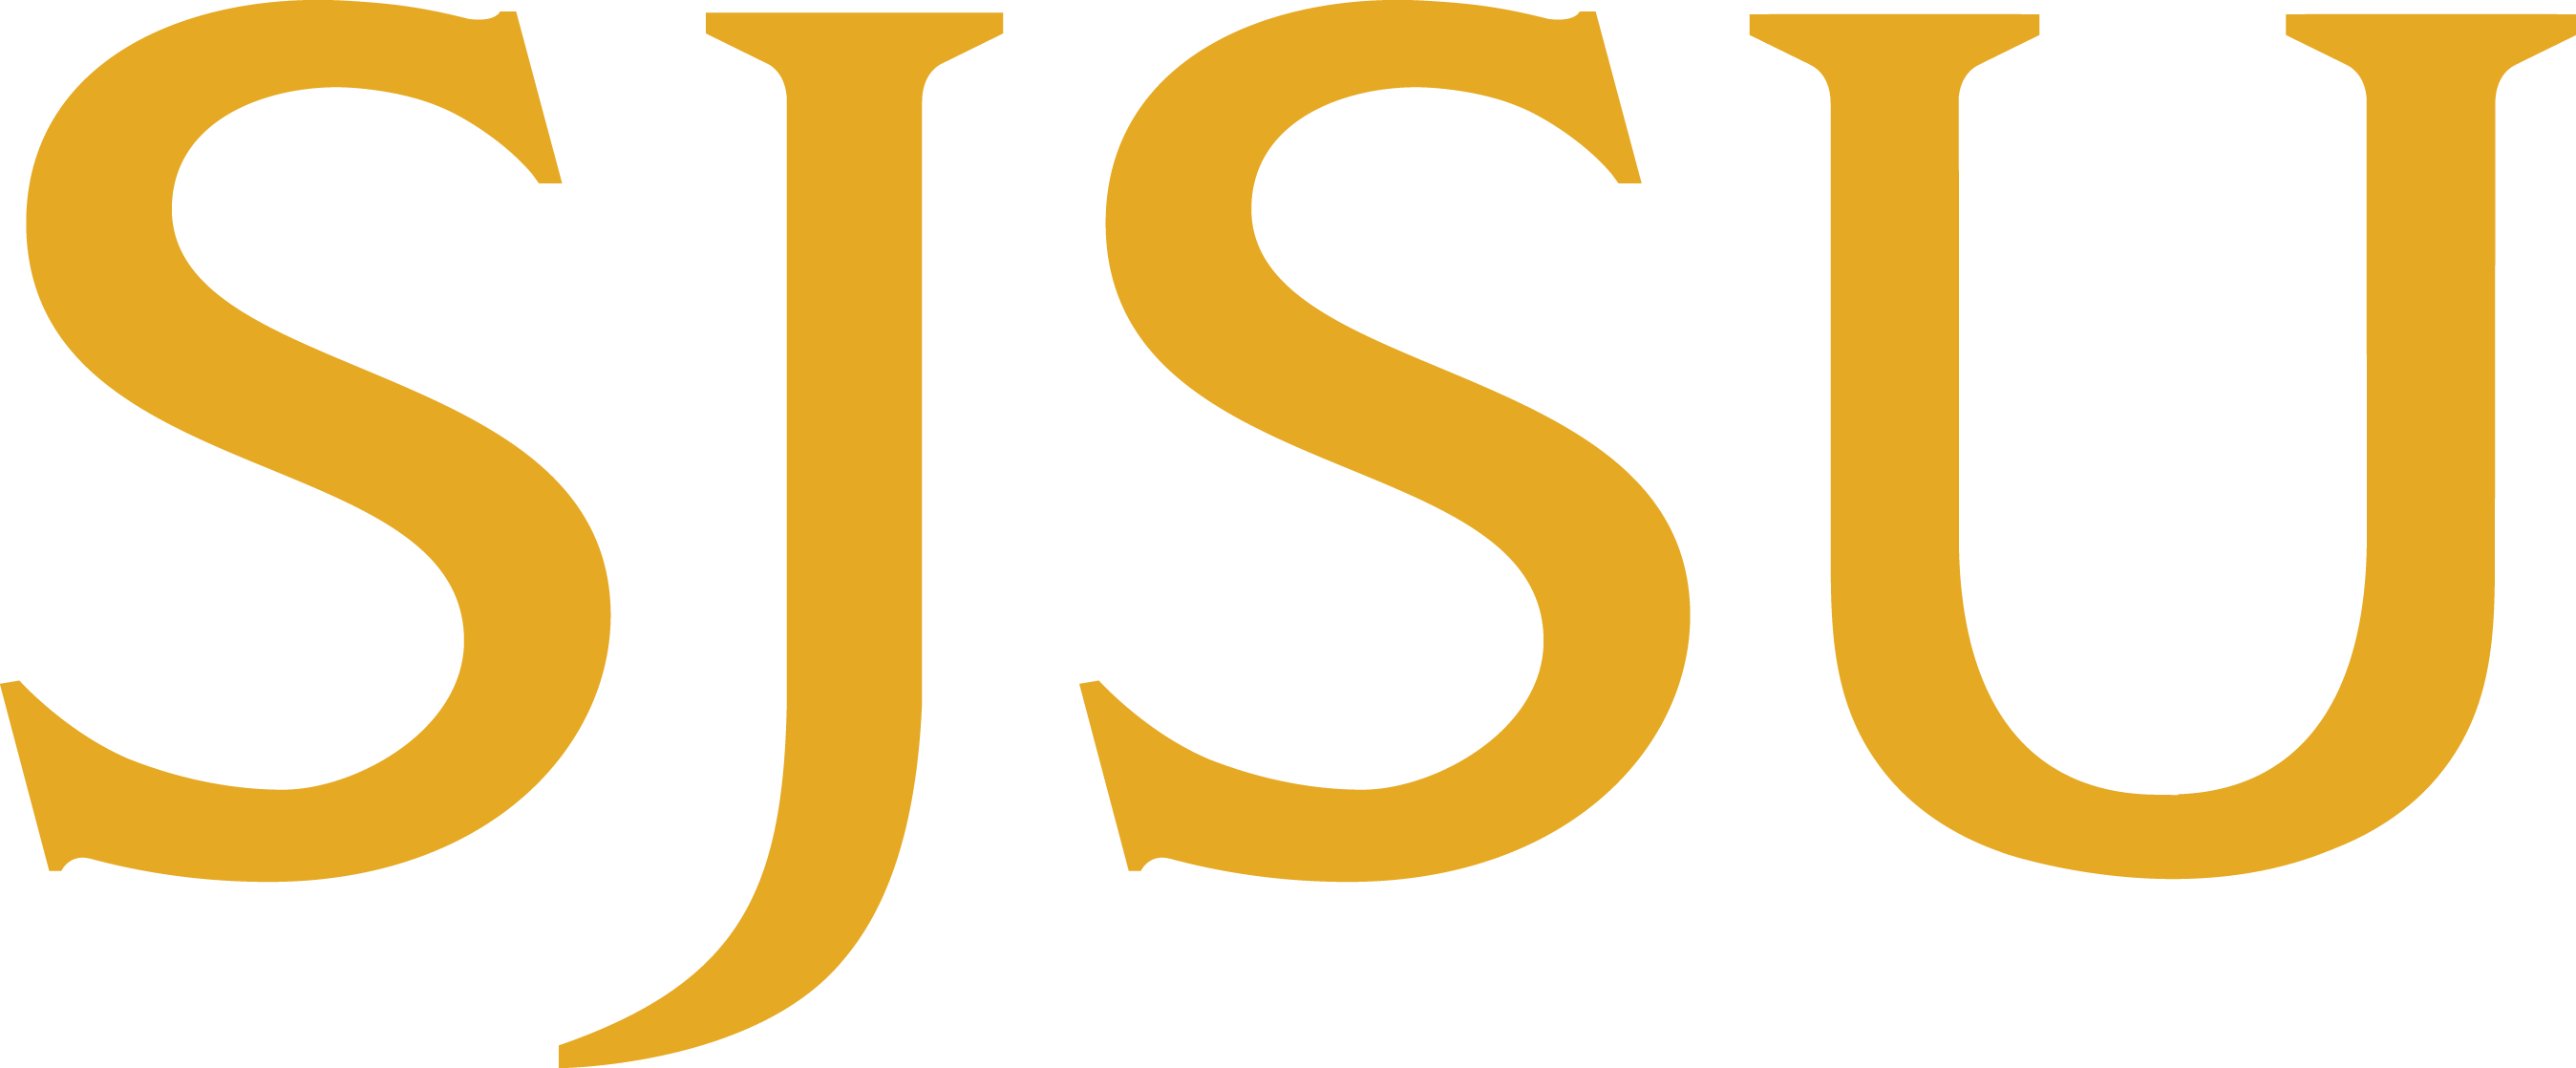 SJSU logo